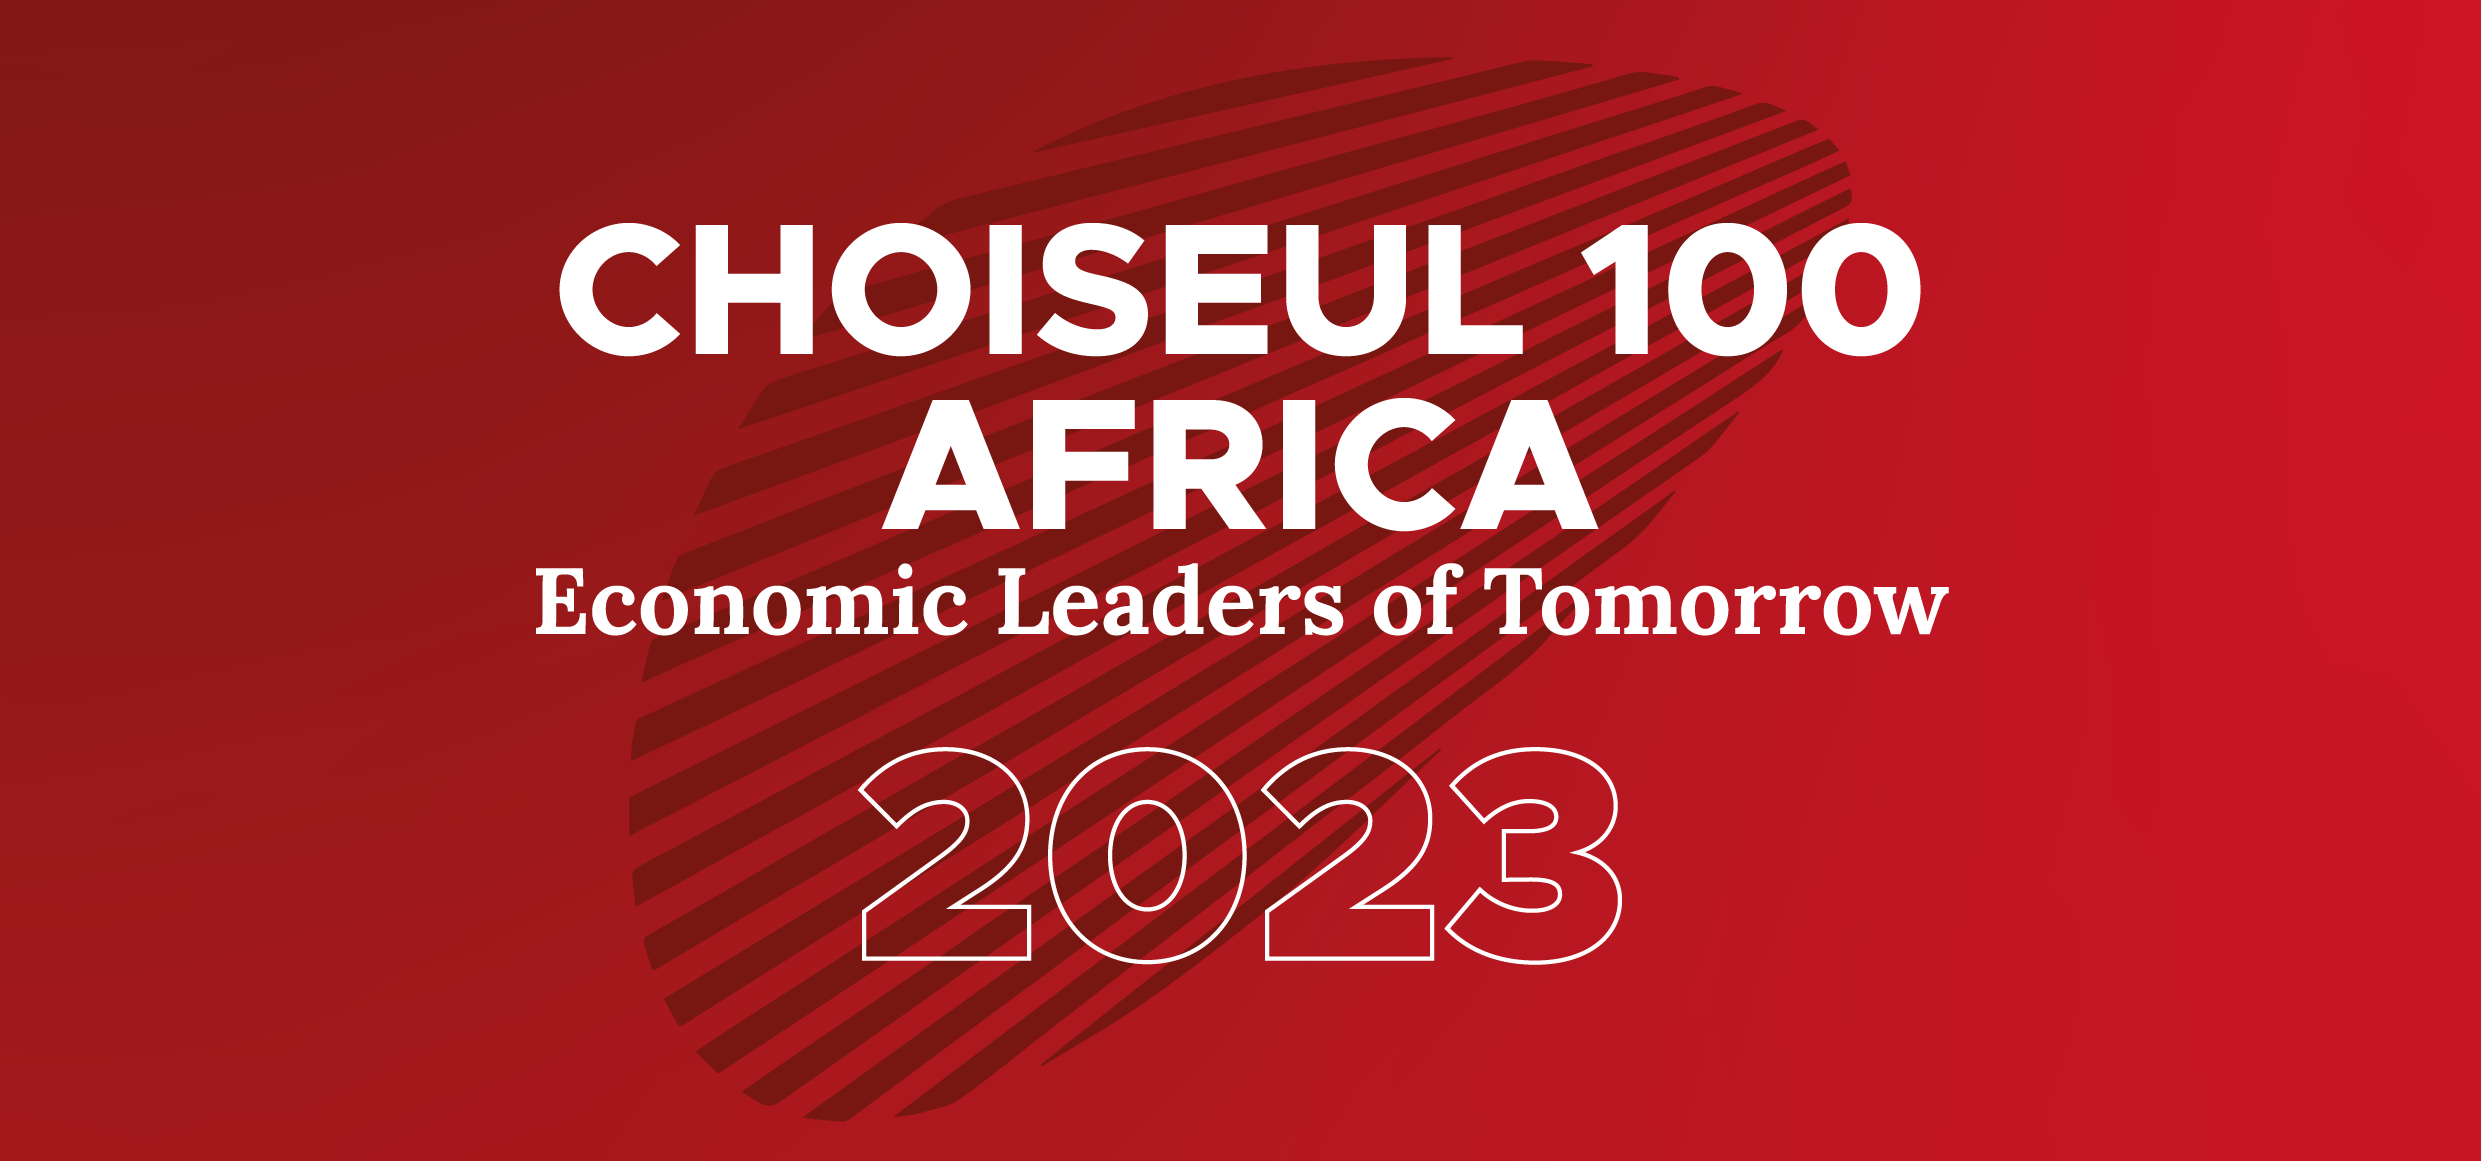 Choiseul 100 Africa : promouvoir la jeune génération économique africaine